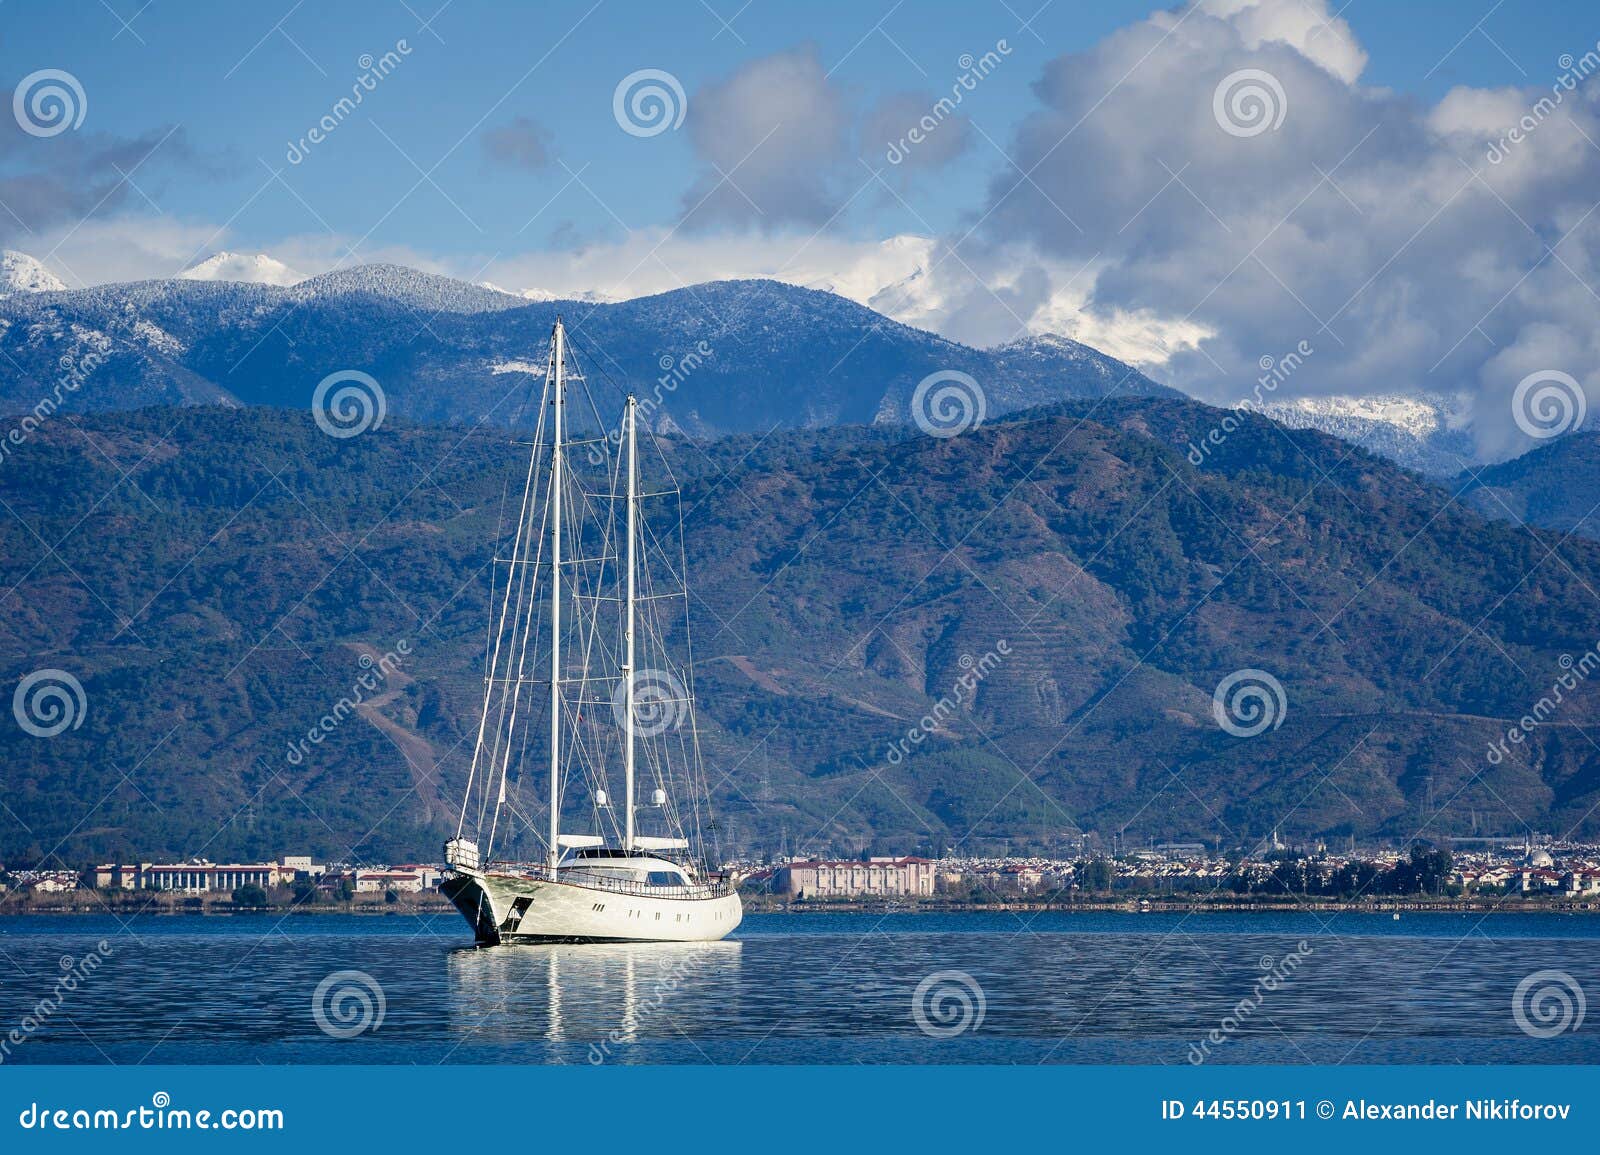 sailing megayacht at nachor